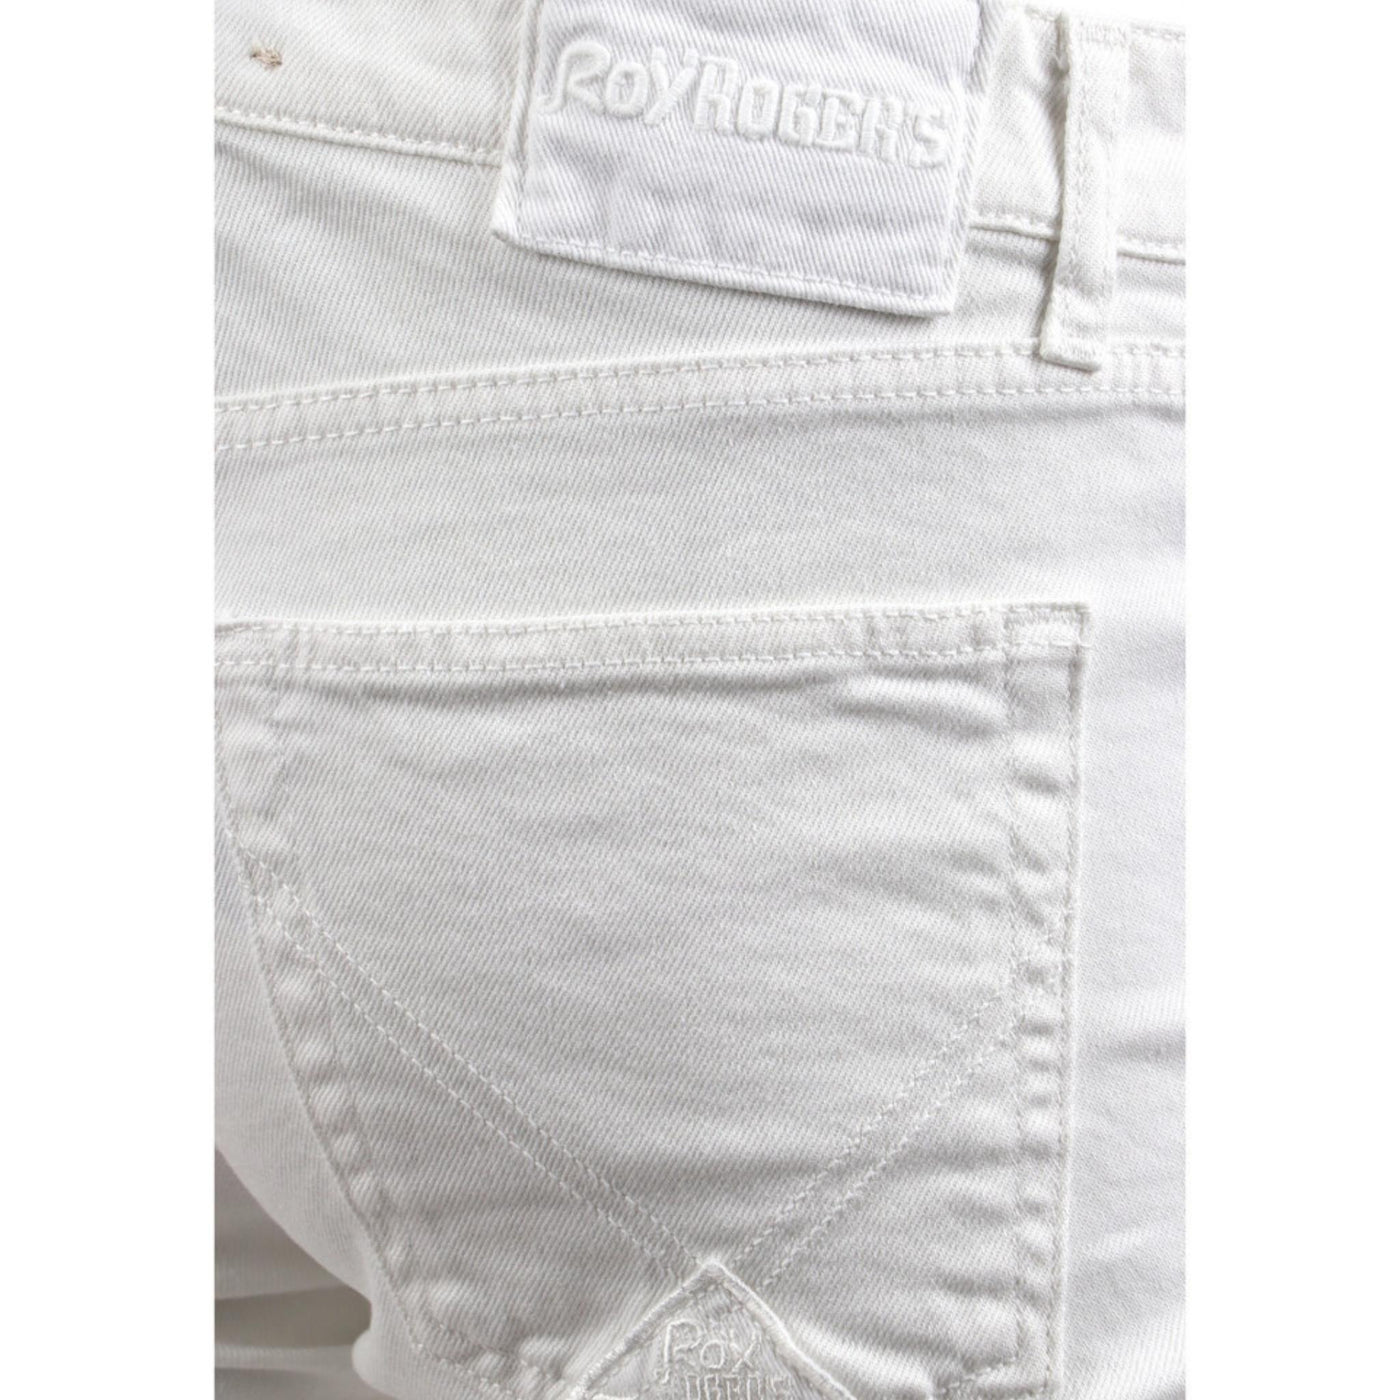 jeans roy roger's uomo cotone con cerniera e bottone bianco dettaglio